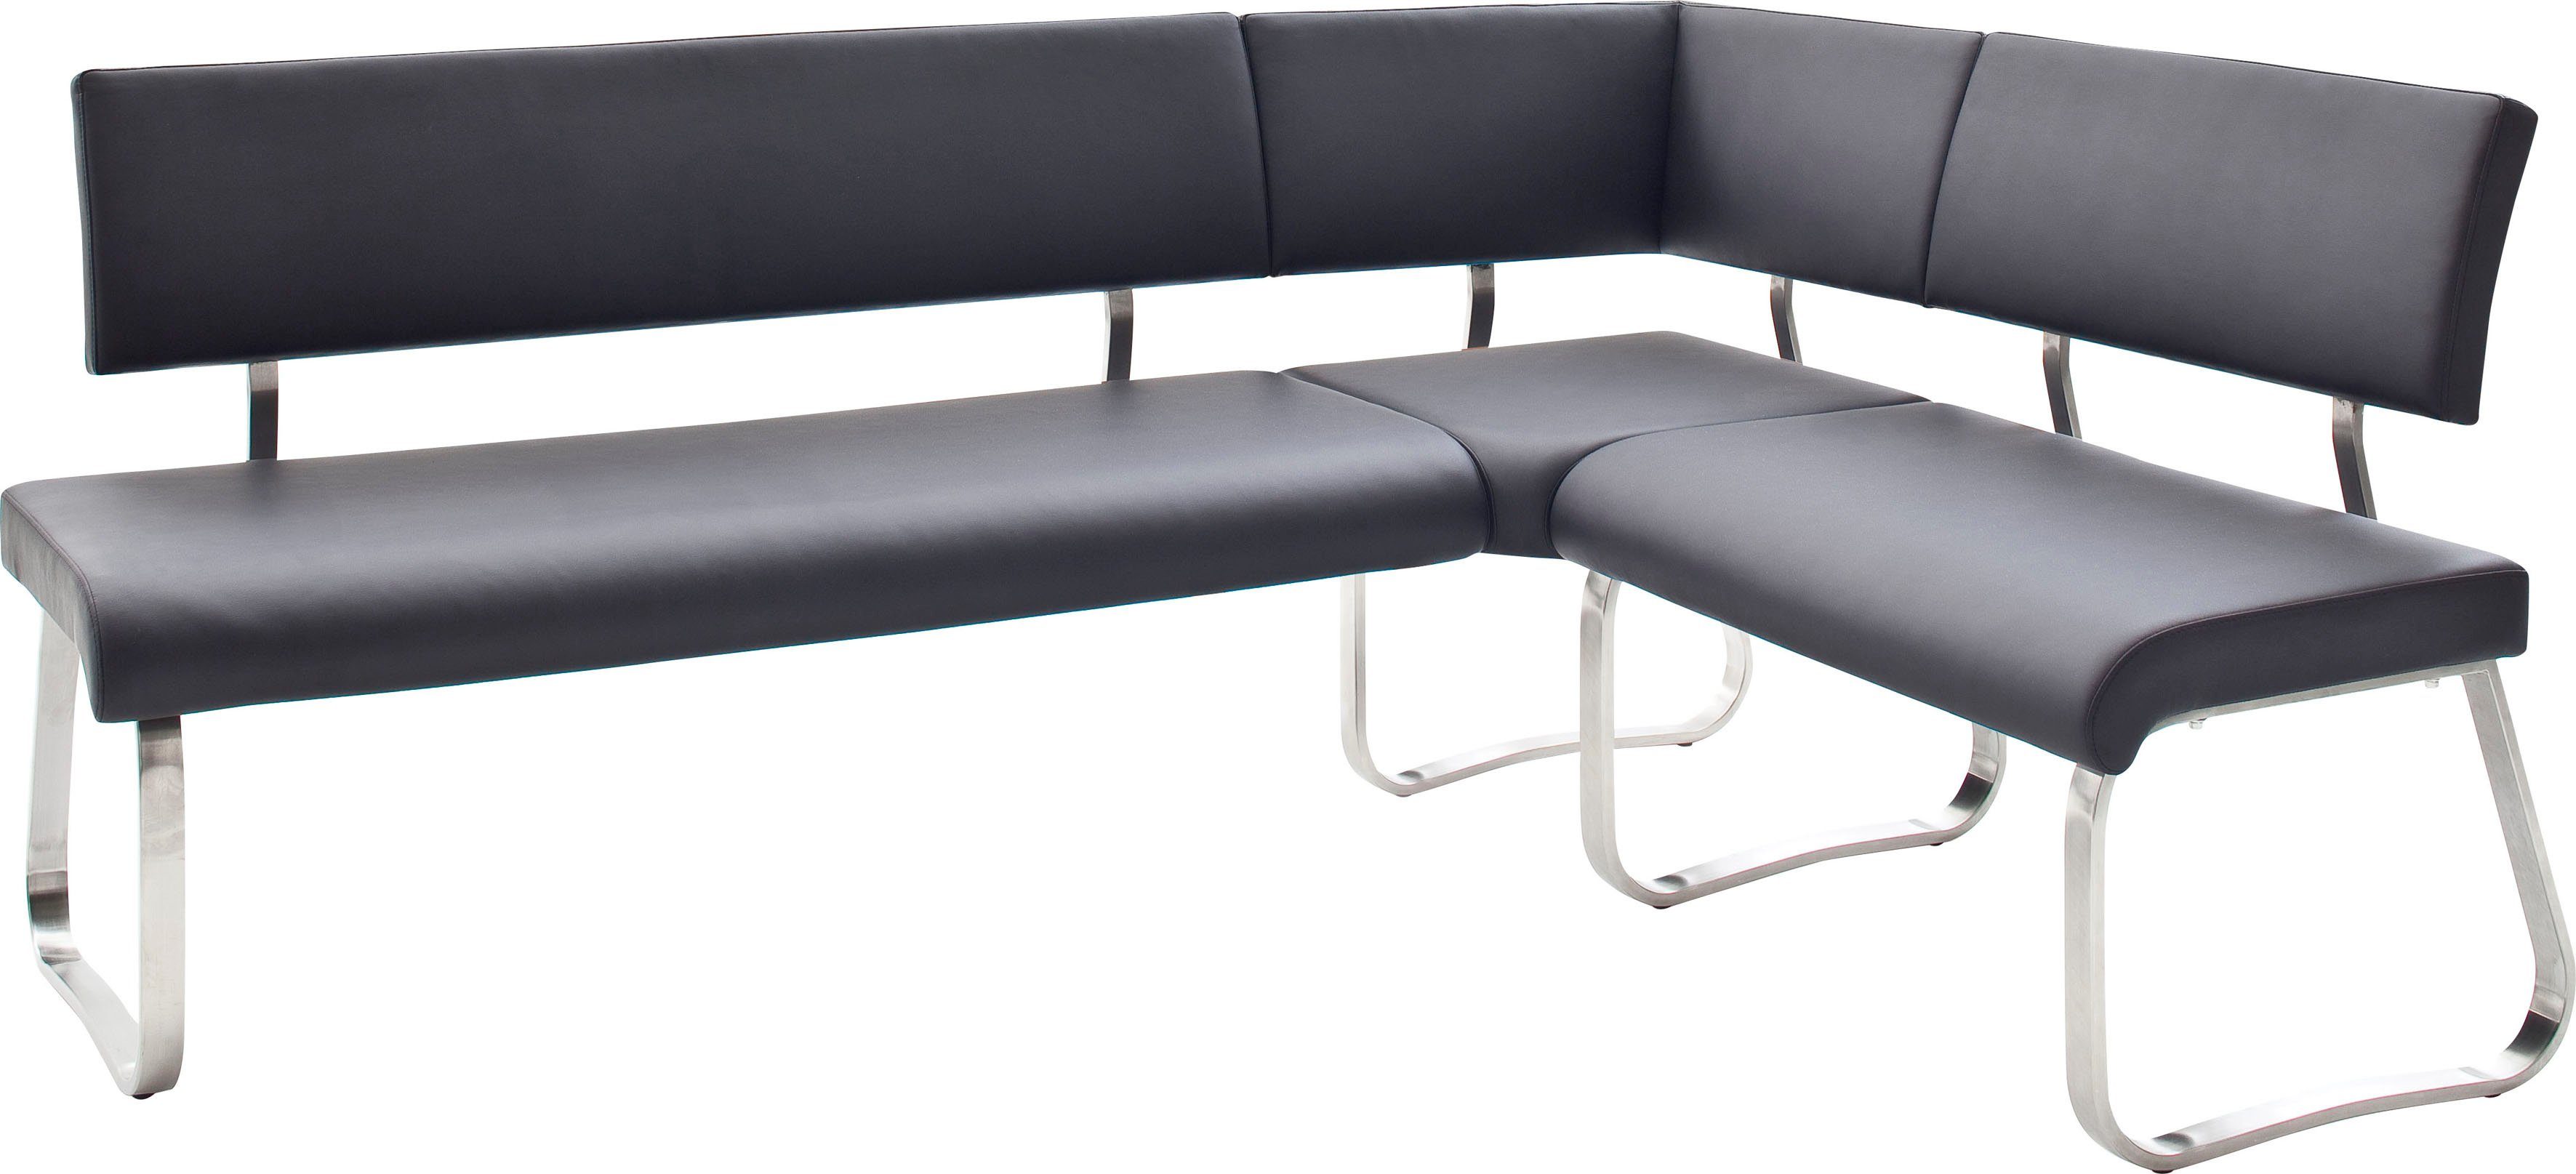 MCA furniture im kg Eckbank 500 cm, frei 200 Breite Eckbank Arco, Raum Schwarz bis stellbar, belastbar